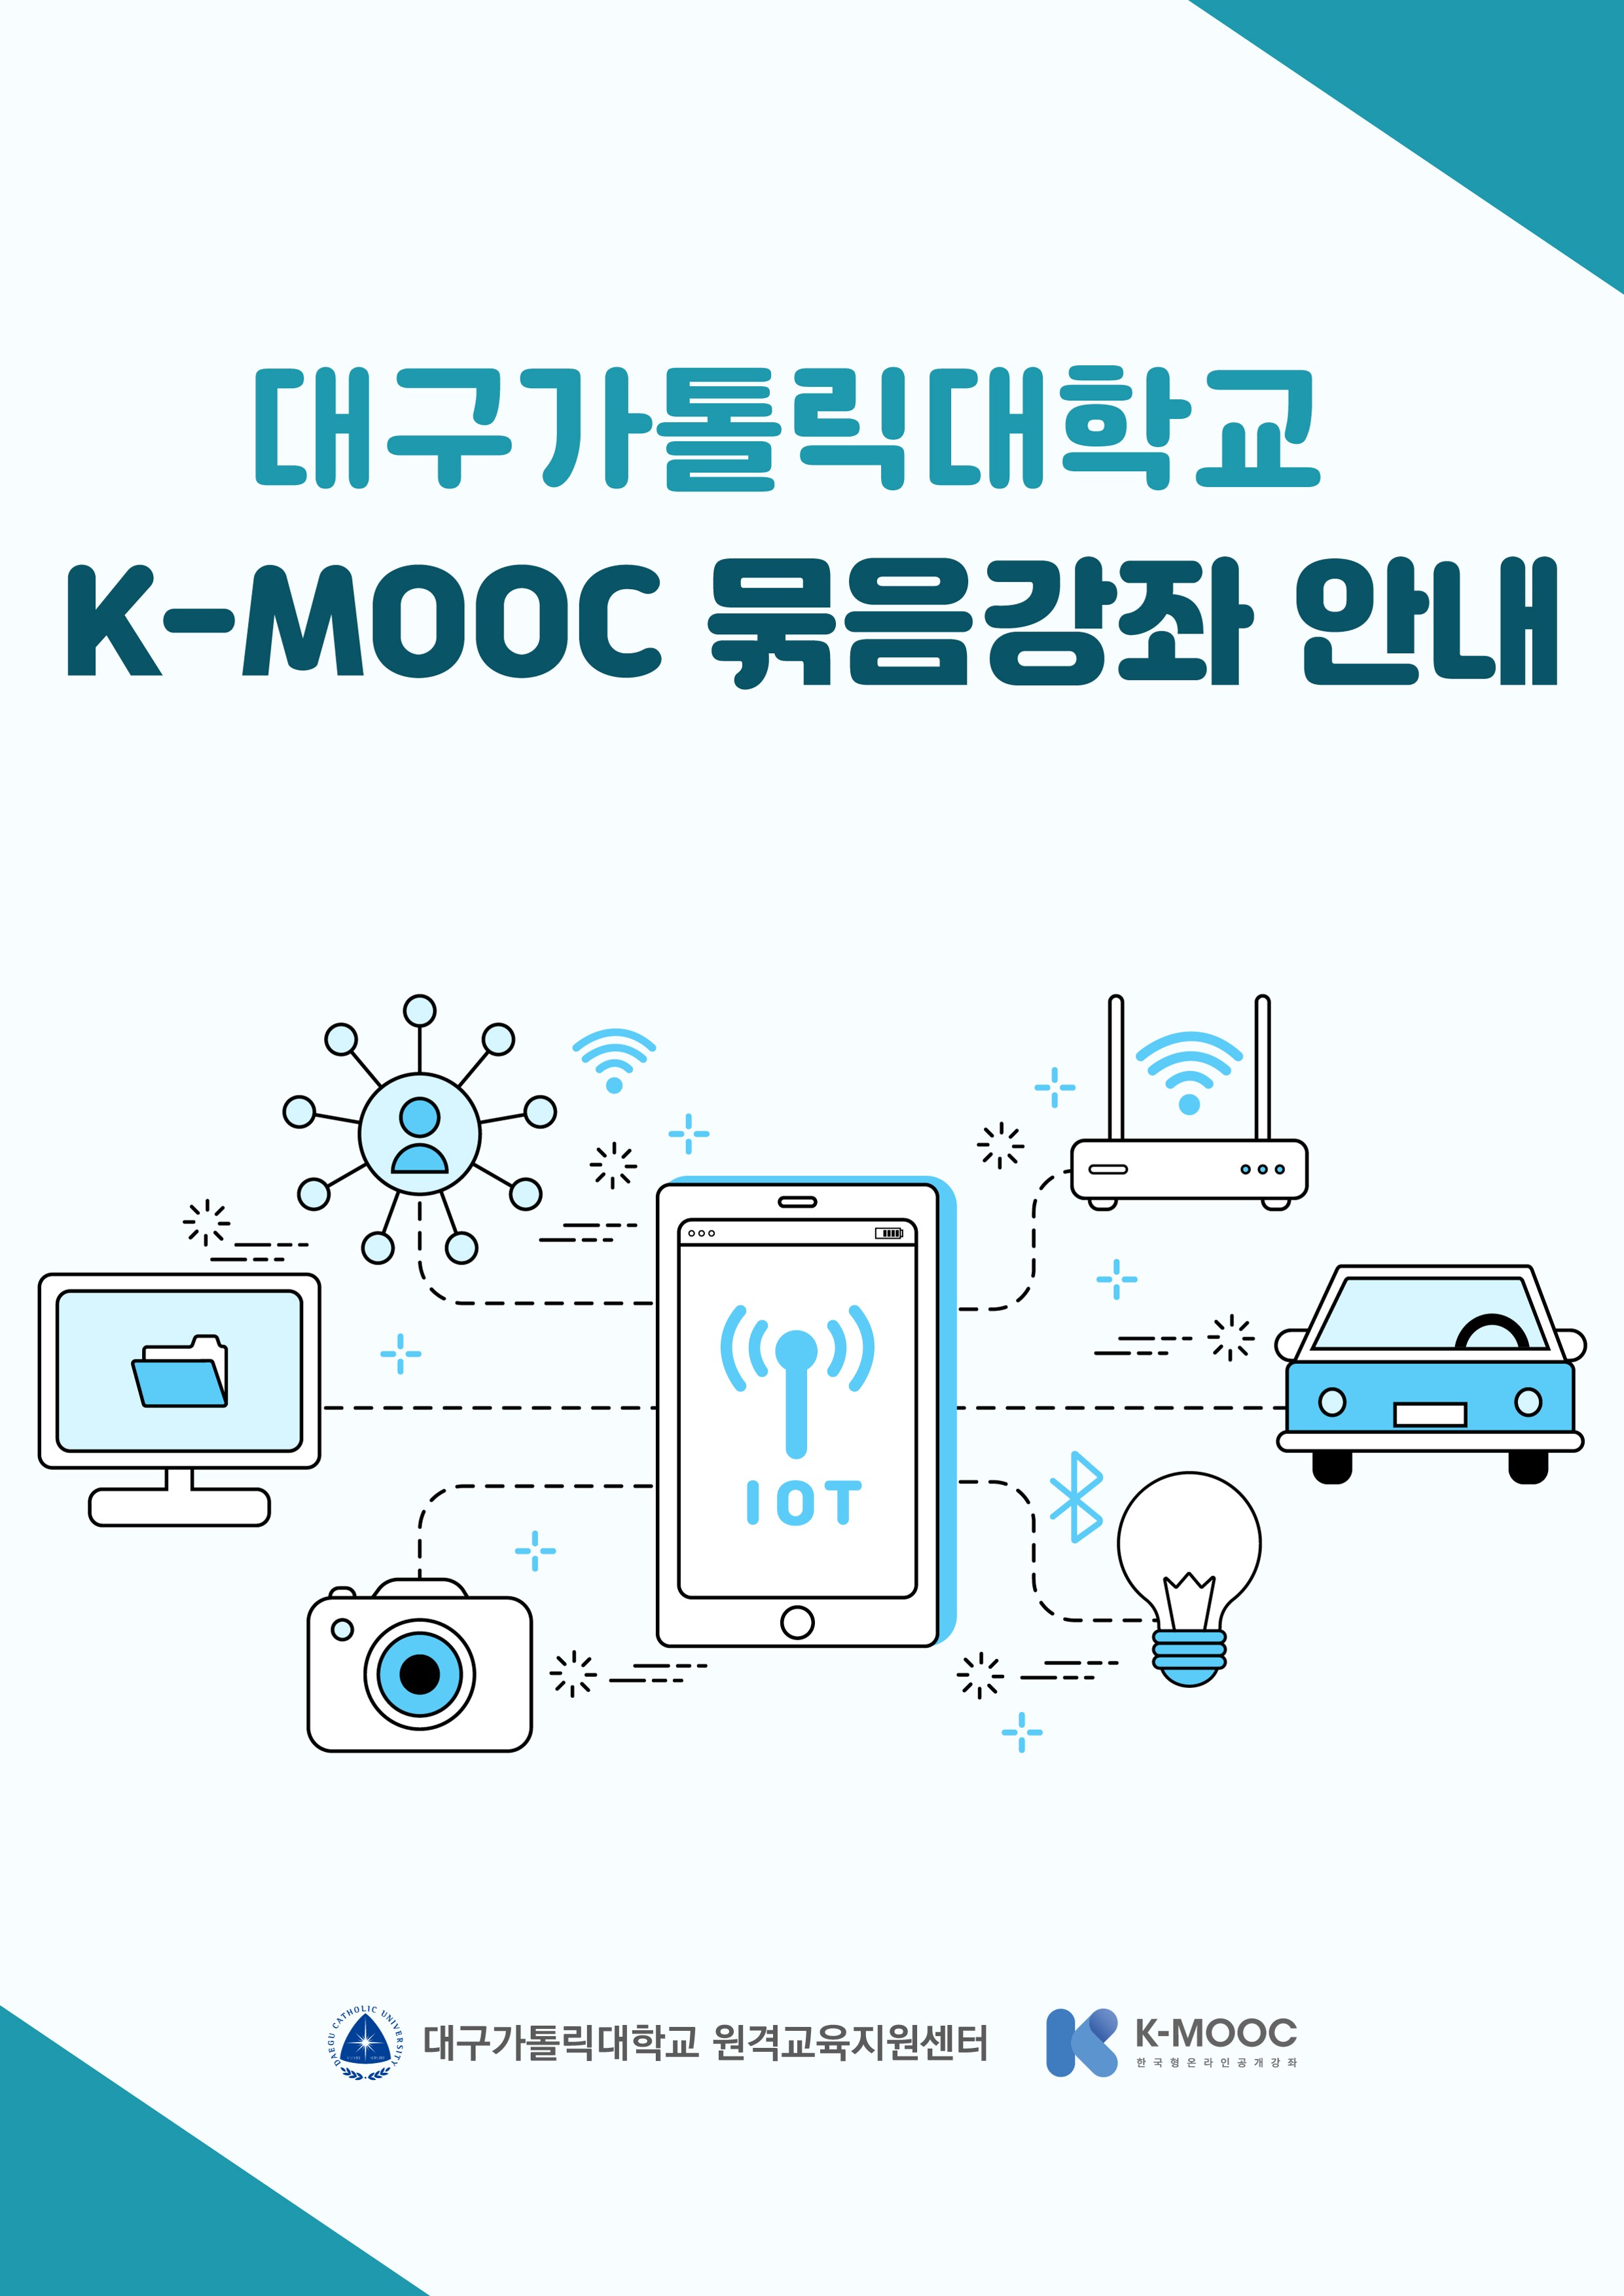 2021학년도 2학기 K-MOOC 묶음강좌 홍보_1.jpg